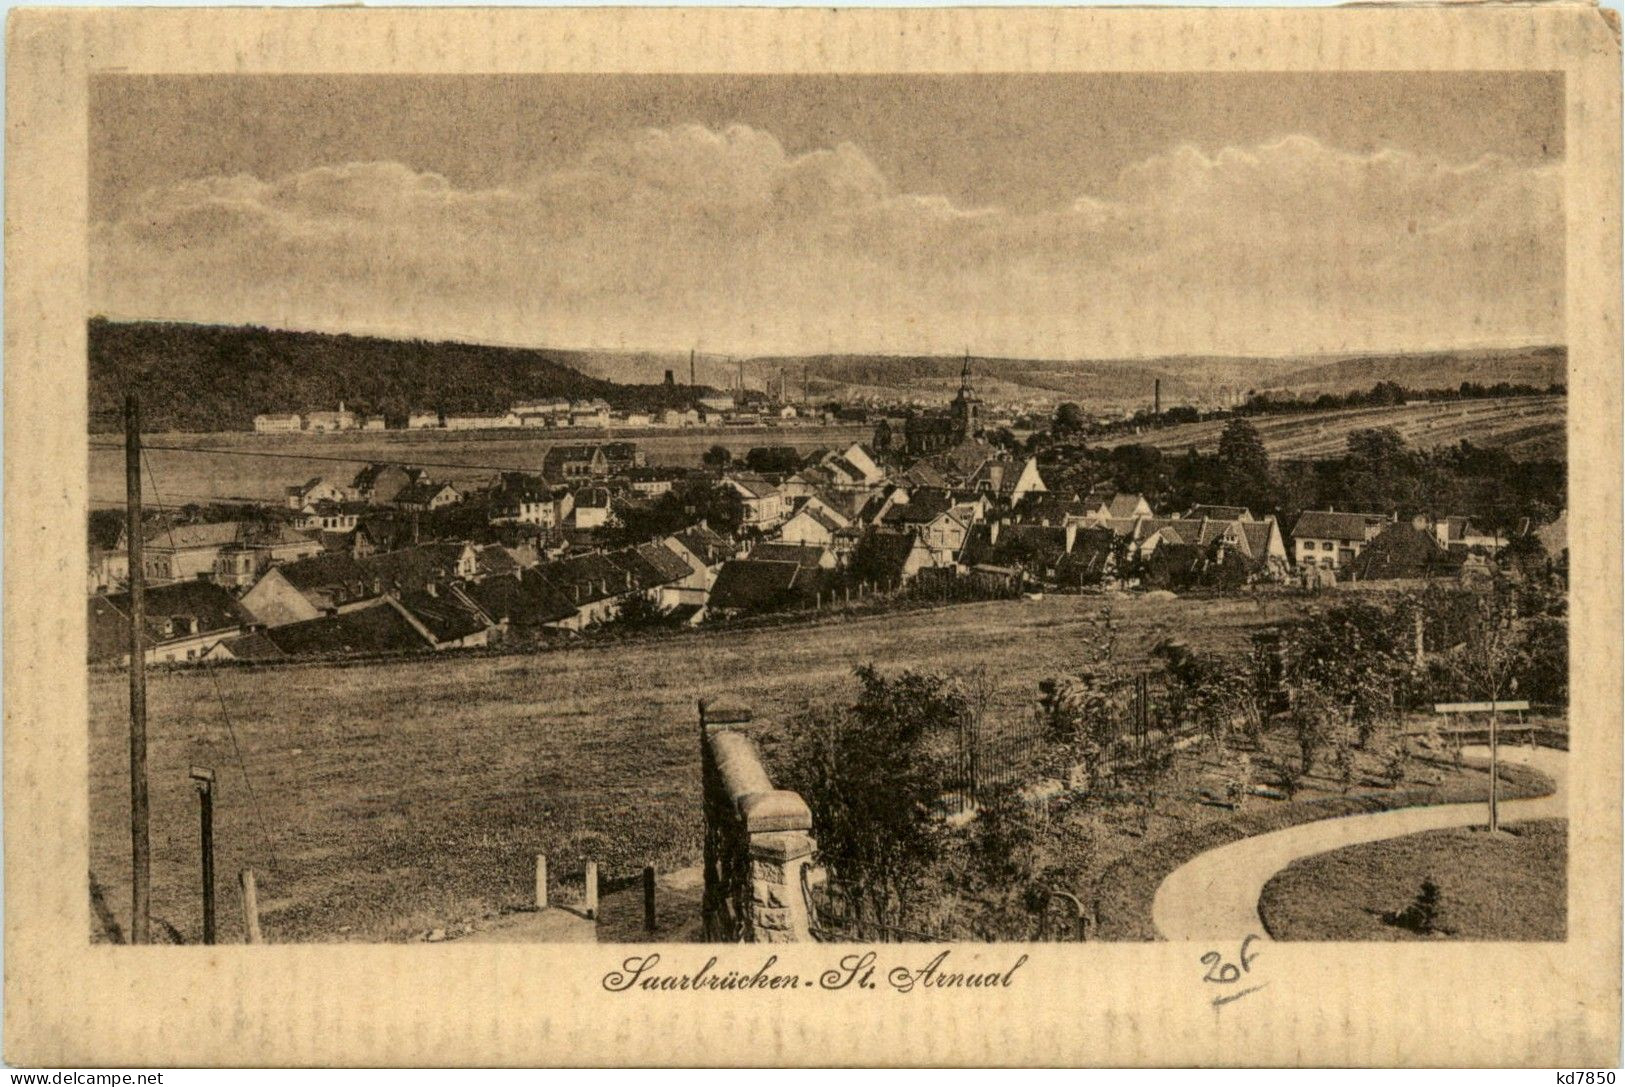 Saarbrücken - St. Arnual - Saarbruecken